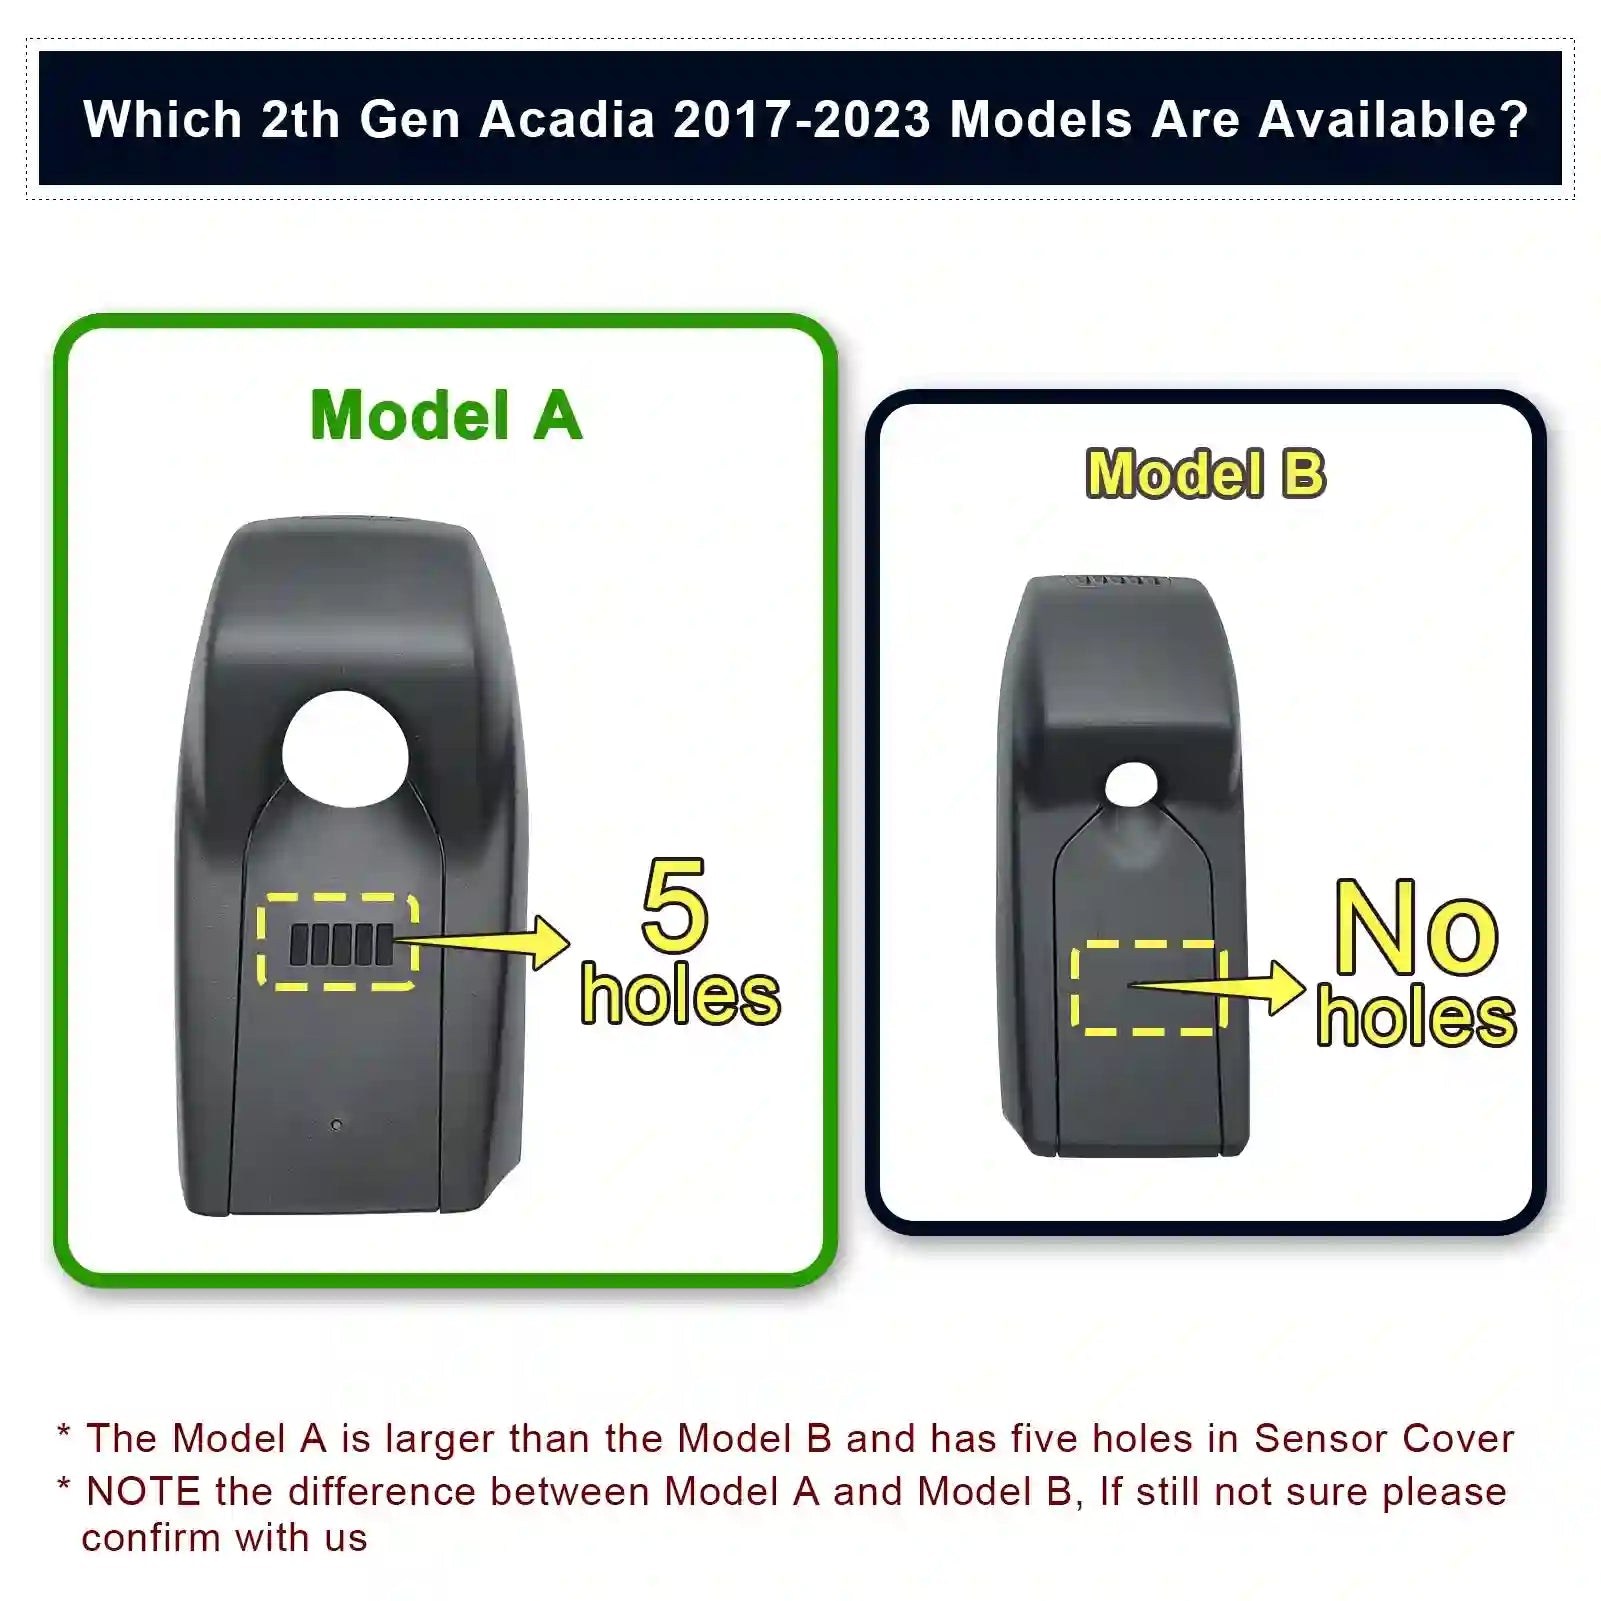 Mangoal 4K Dash Cam fit for GMC Acadia 2017-2023 (Model B), SE SEL Set AT4 Denali, Integrated OEM Look, UHD 2160P Video, G-Sensor, Loop Recording, Easy to Install, App & WiFi, 128GB Card